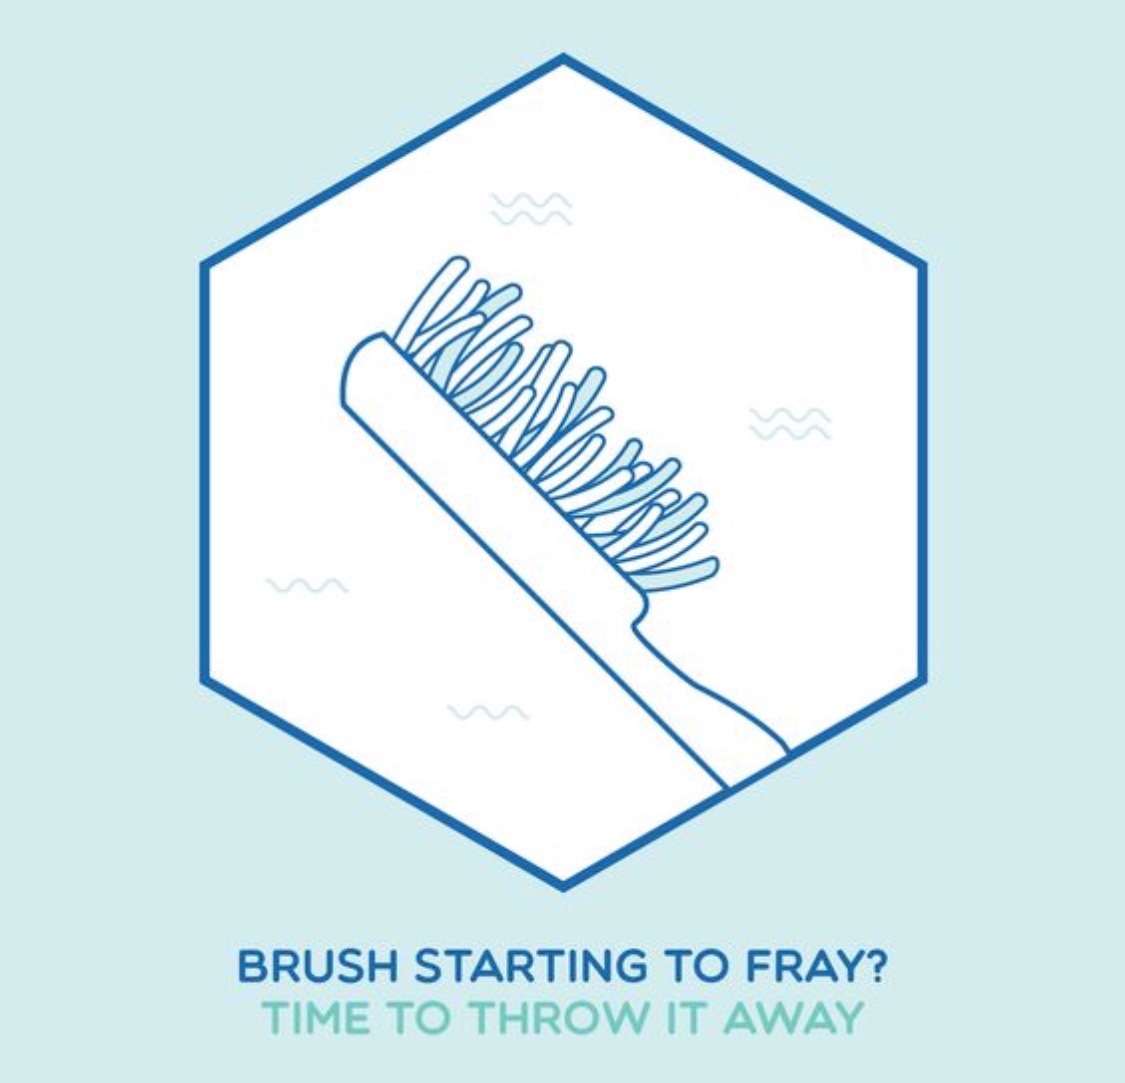 Brush fray